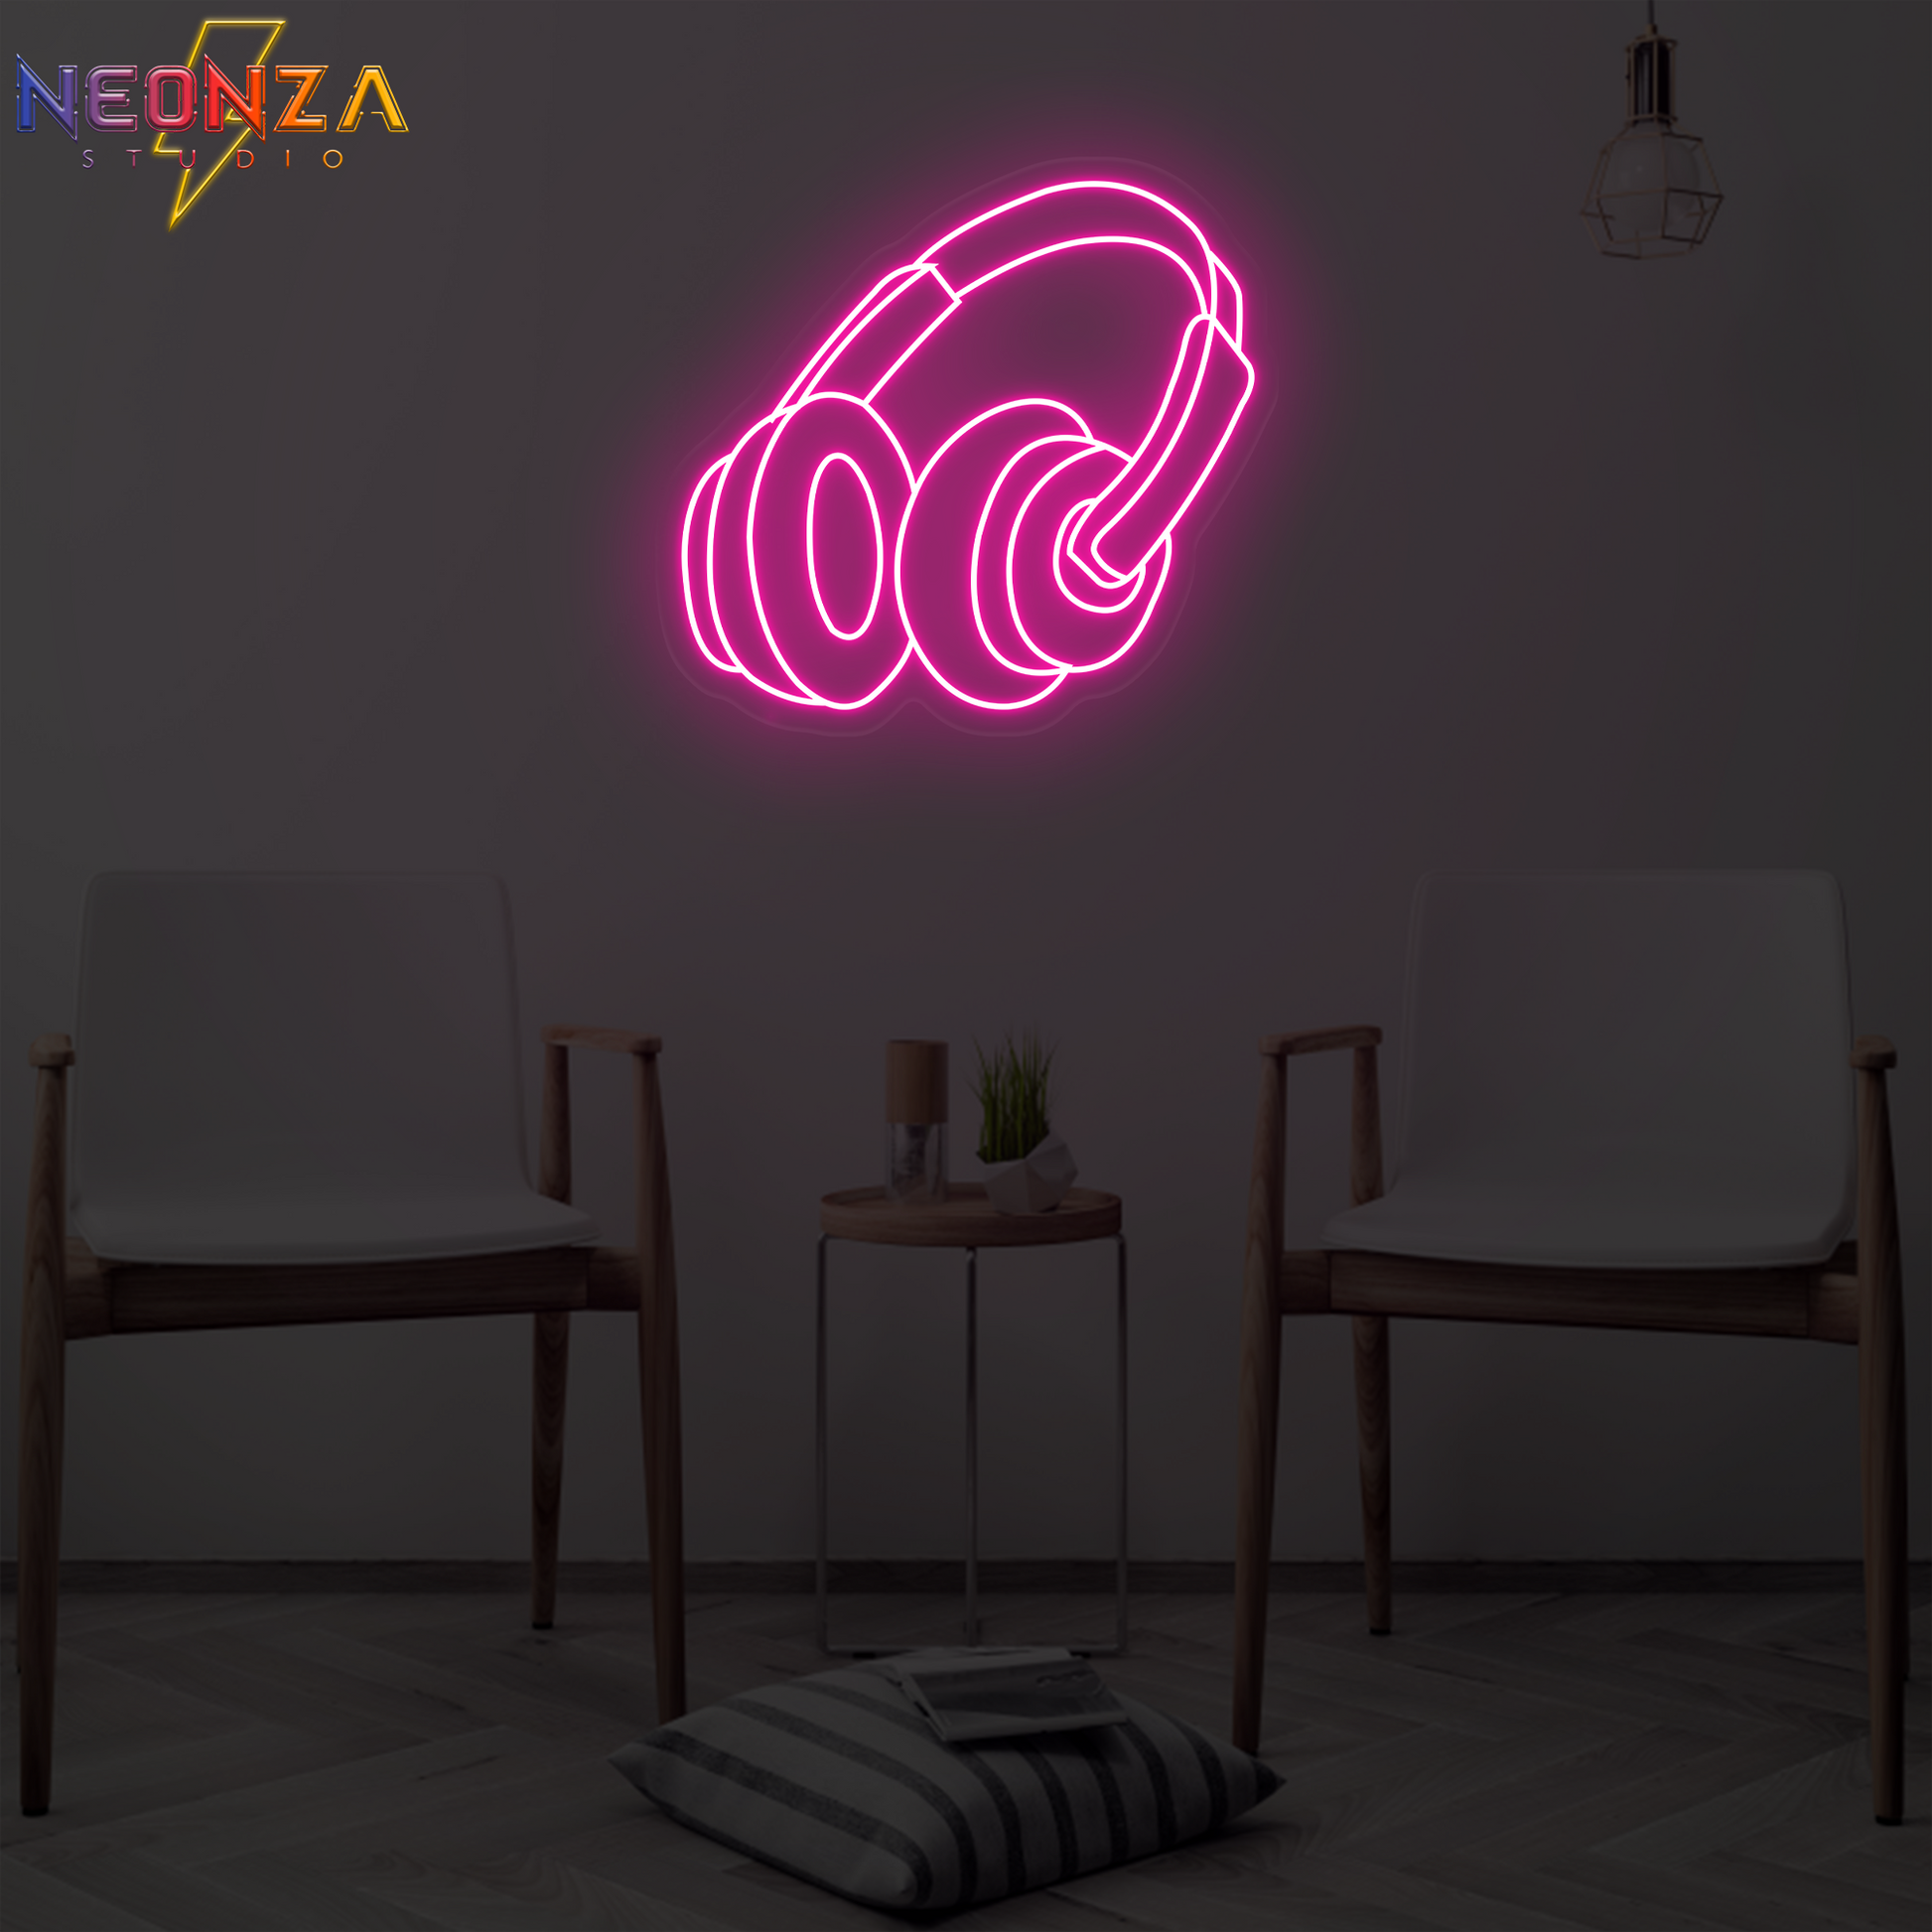 Buy Happy Birthday Neon Sign Pink Online India – Neonzastudio